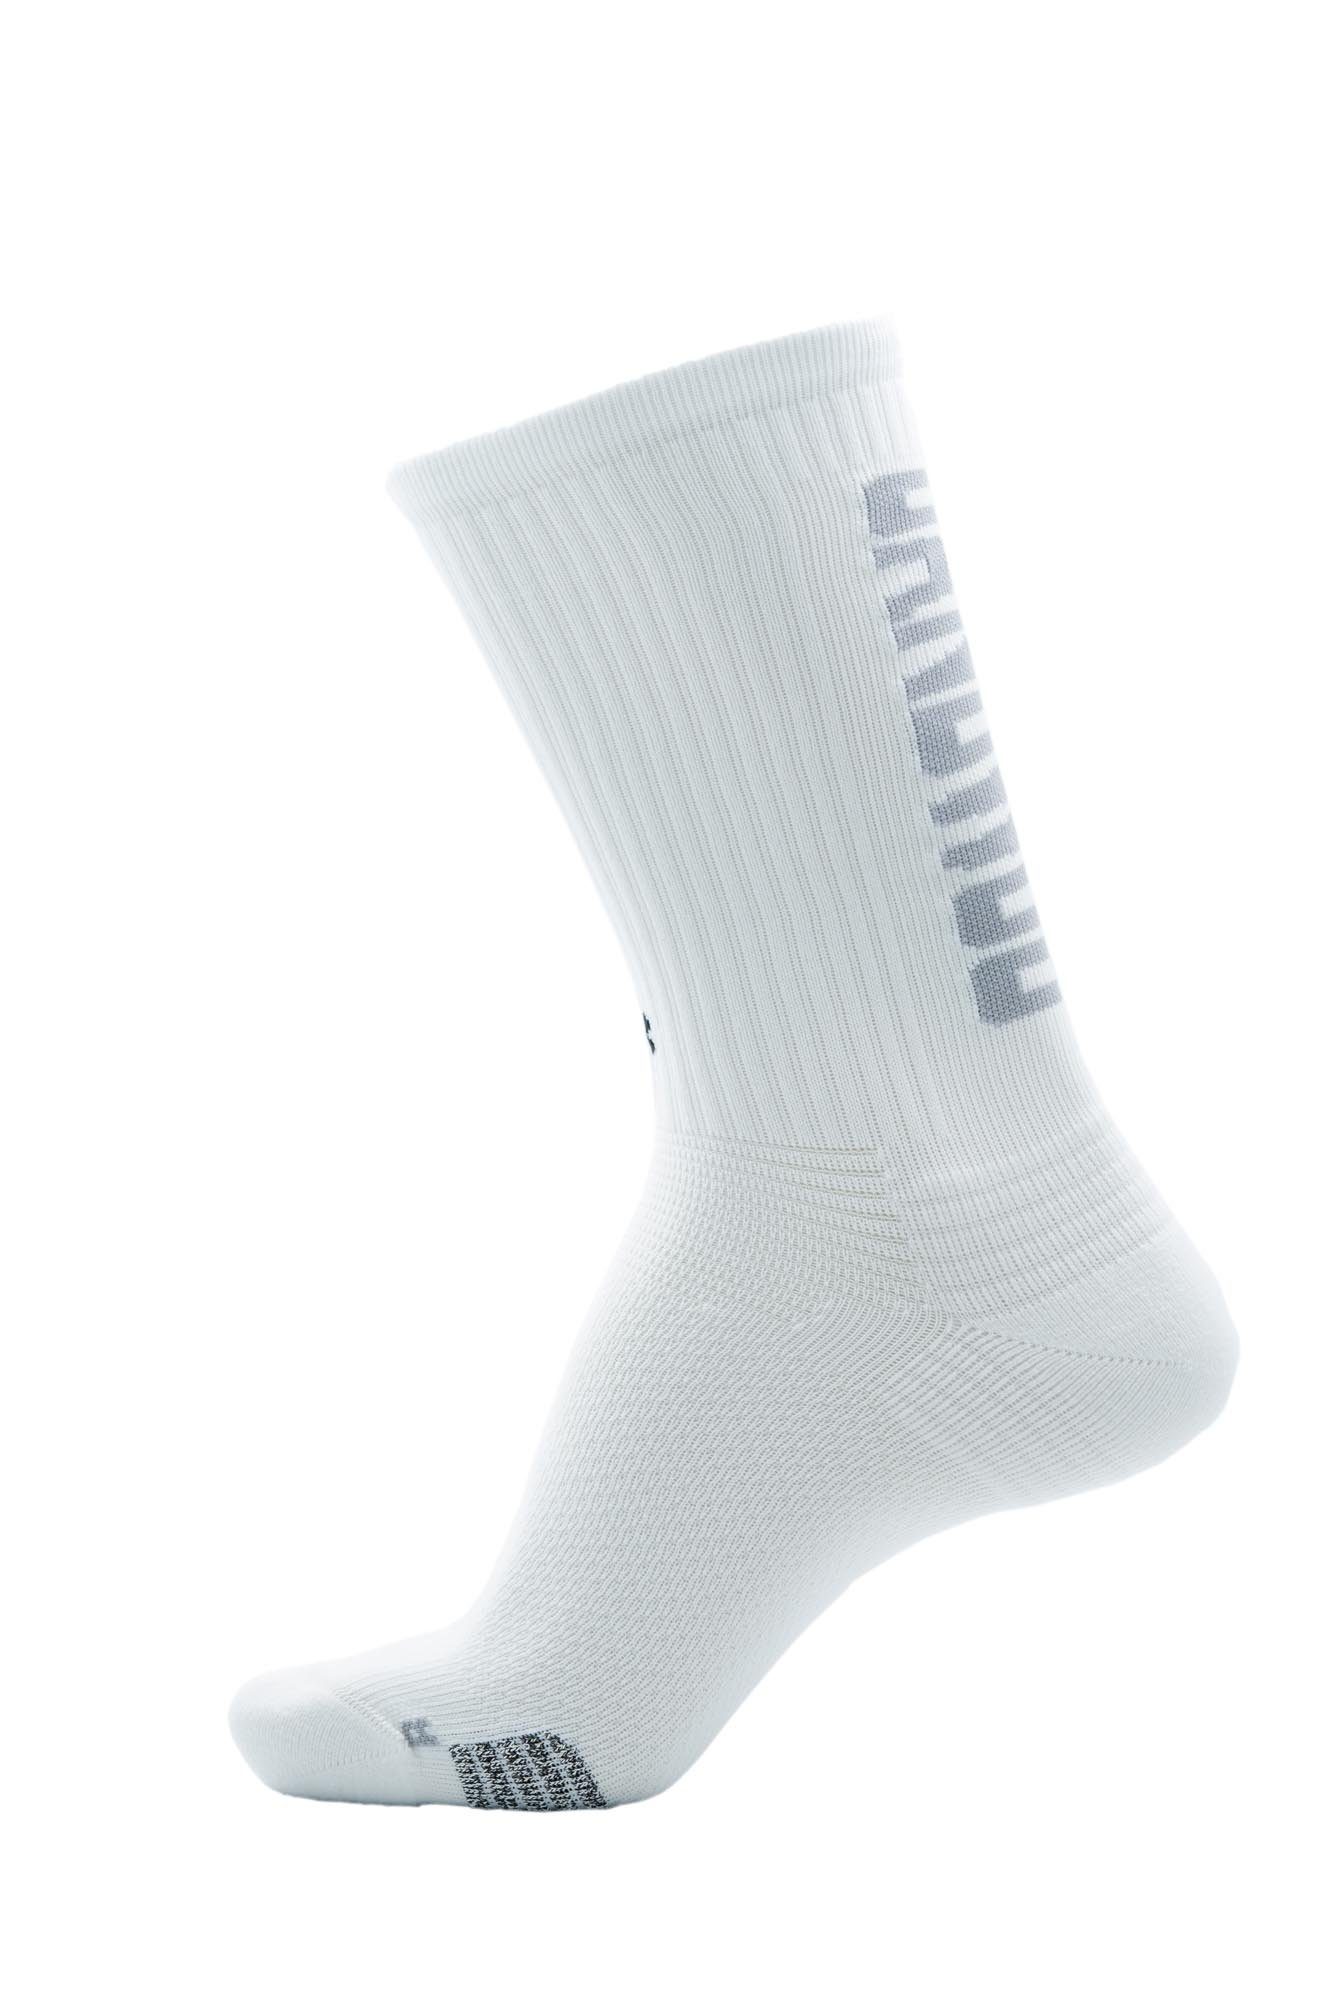 UANDWOO Funktionssocken 3701660038 UANDWOO Performance Sport Socks verschiedene Farben und Größen white